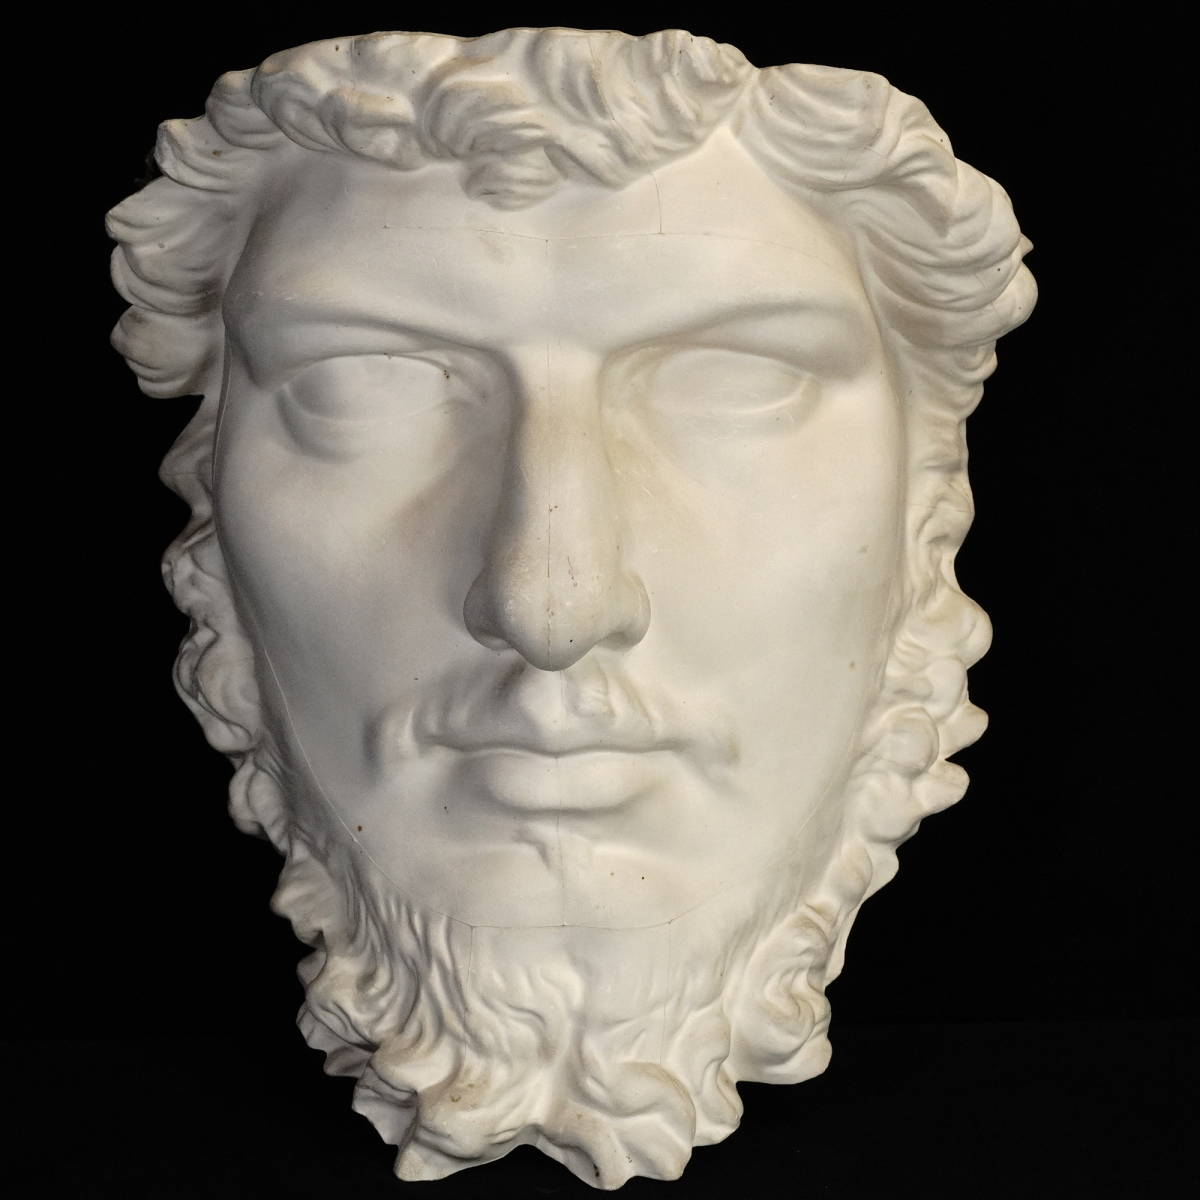 ビンテージ 石膏像 ルキウス・ウェルス像 ローマ帝国皇帝(在位 161